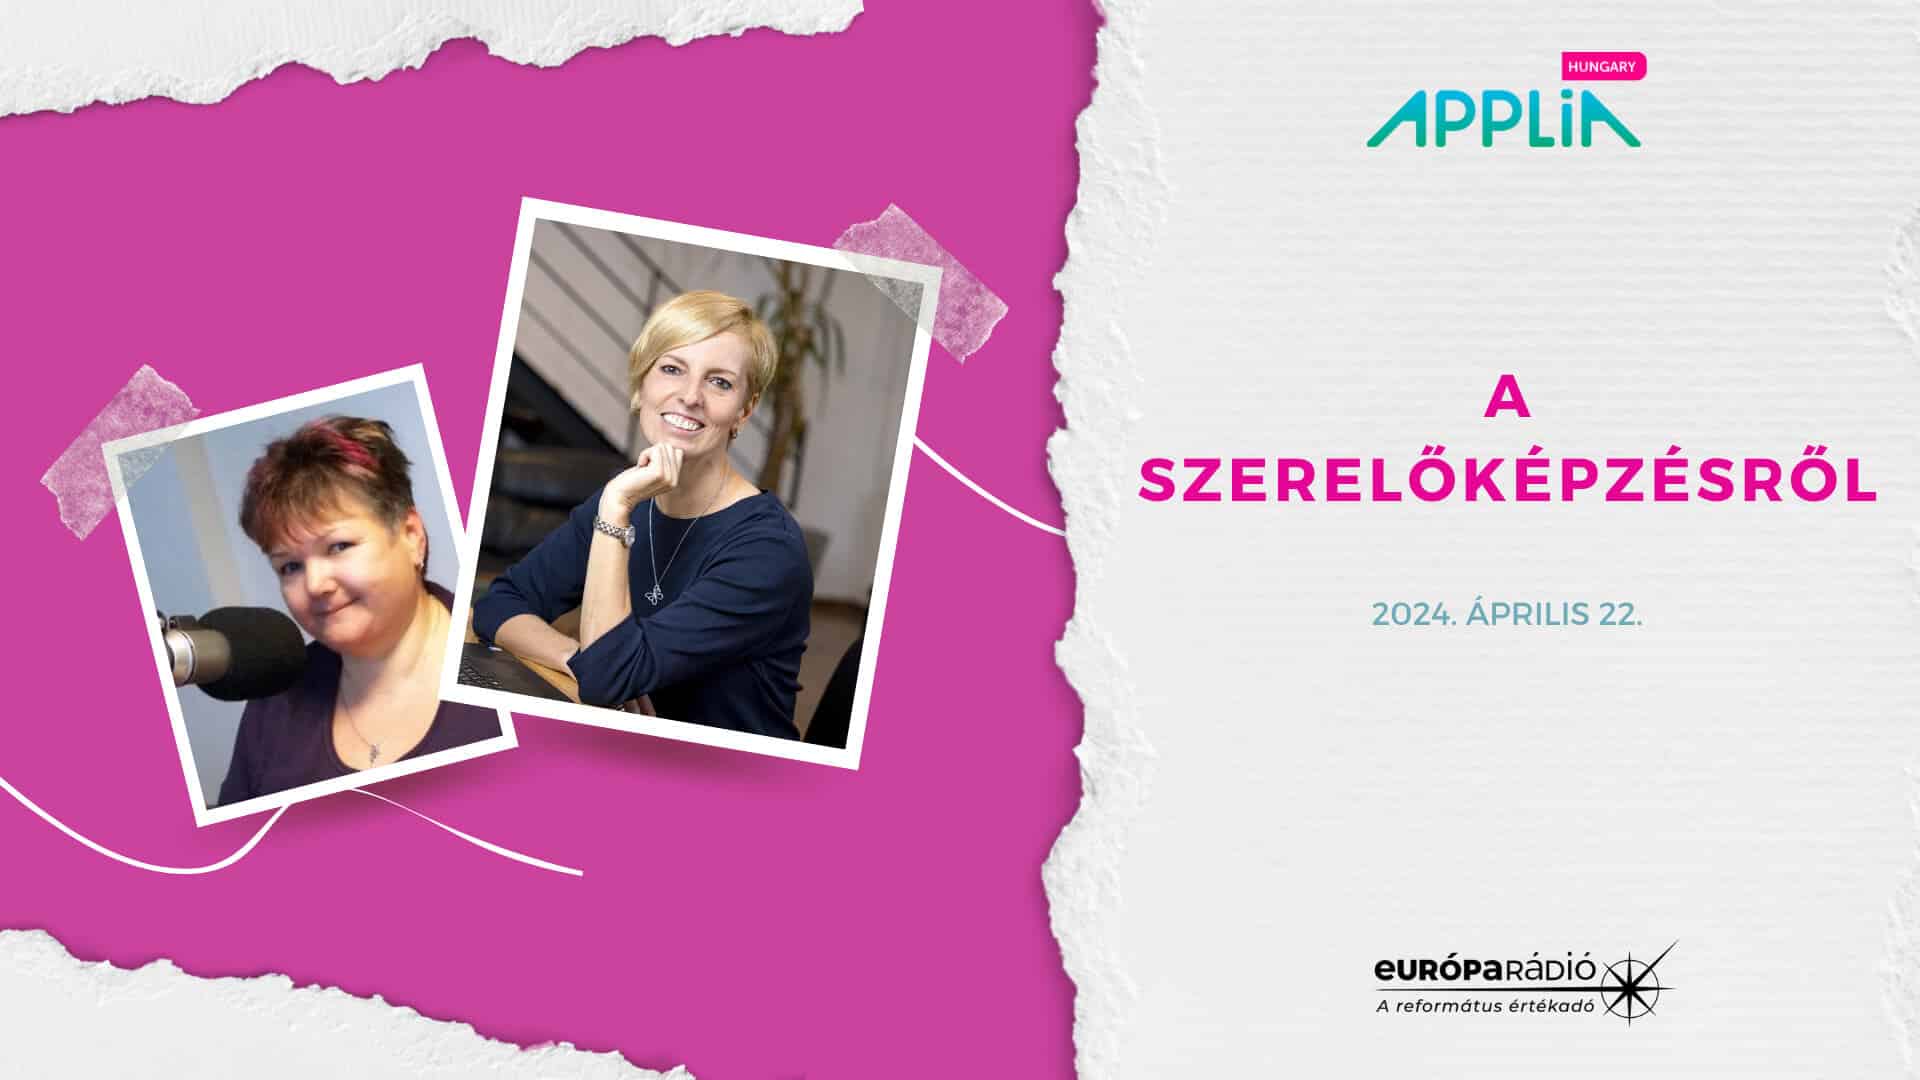 Európa Rádió interjú: A szerelőképzésről - APPLiA Magyarország